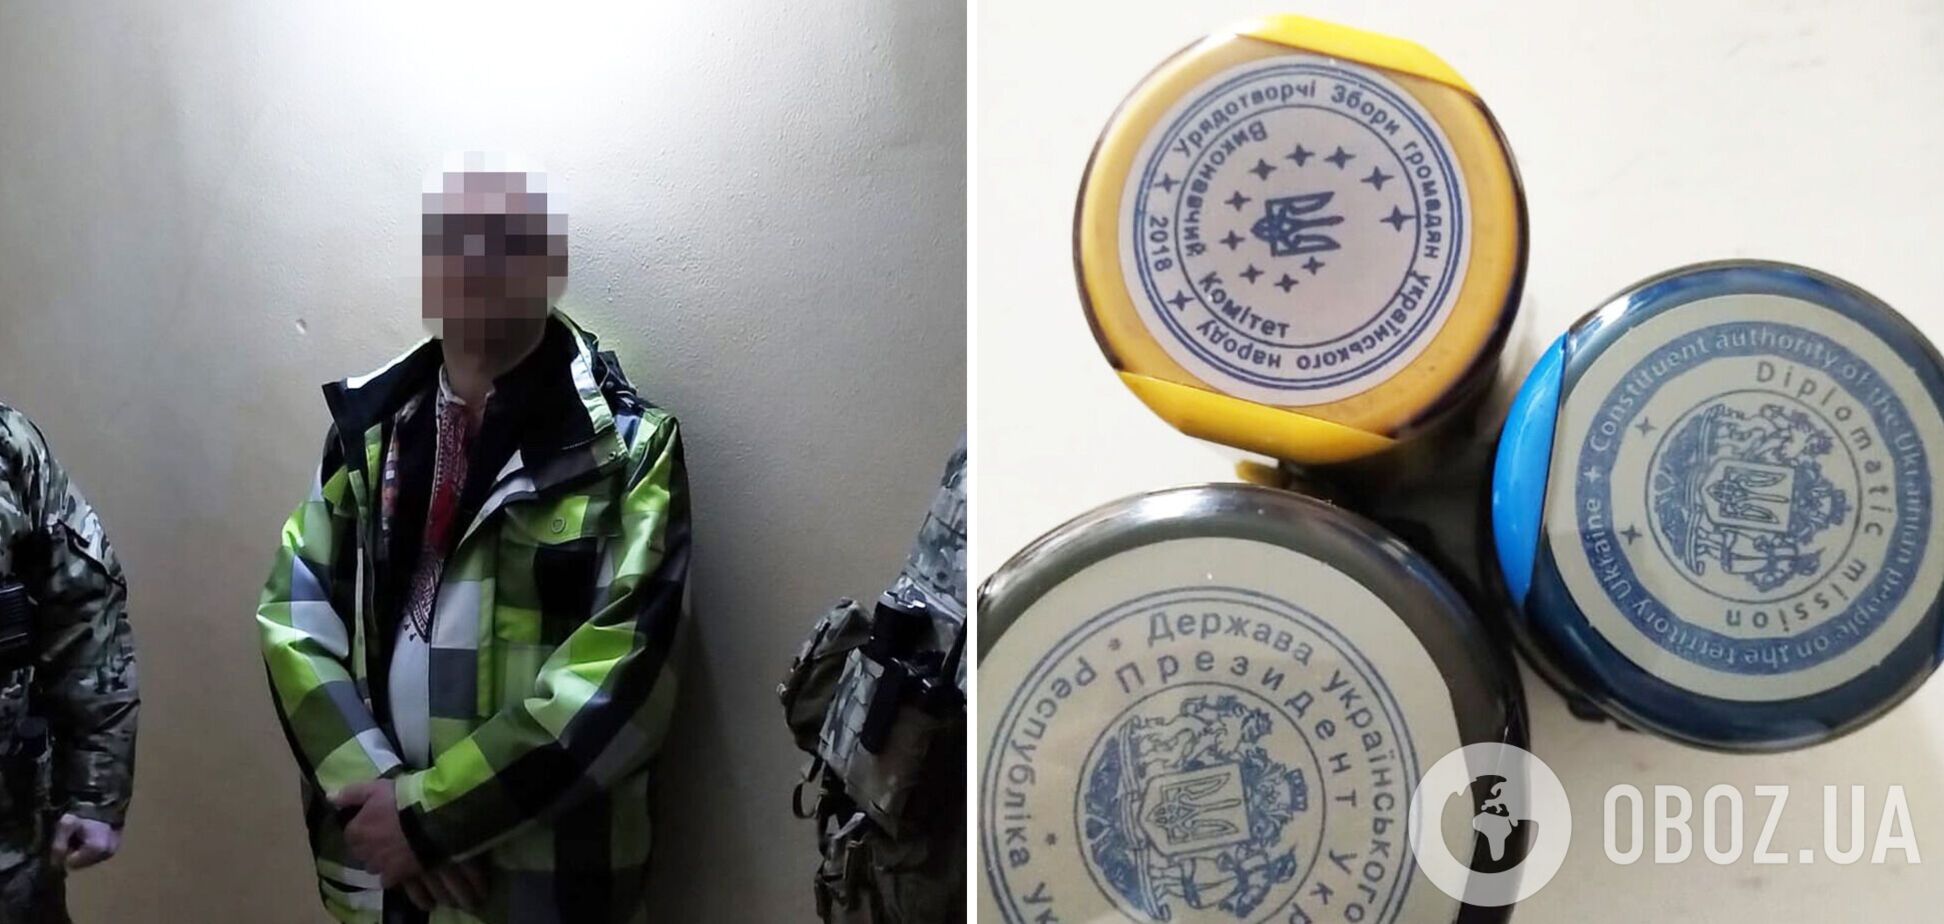 СБУ затримала у Дніпрі фейкового 'президента України', який планував повалення влади. Фото